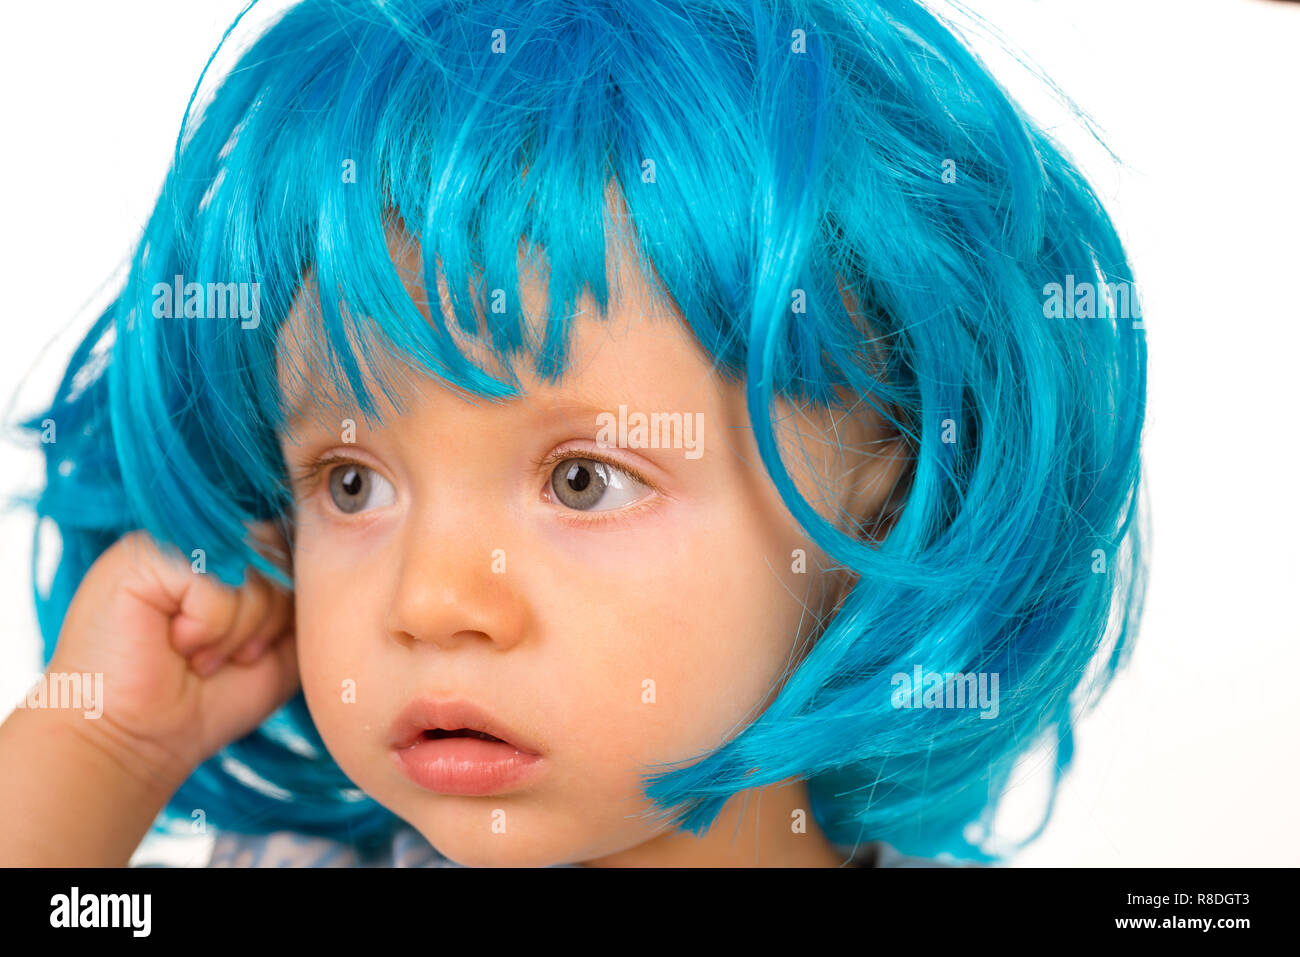 Funky style Schönheit. Cute Baby mit langen blauen Haare. Kleines Kind  tragen blaue Perücke Haar. Kleine Zicklein in ausgefallenen Perücke Frisur.  Adorable kleine Kind in Fashion Perücke. Schönheit aussehen Frisur für  Cosplay